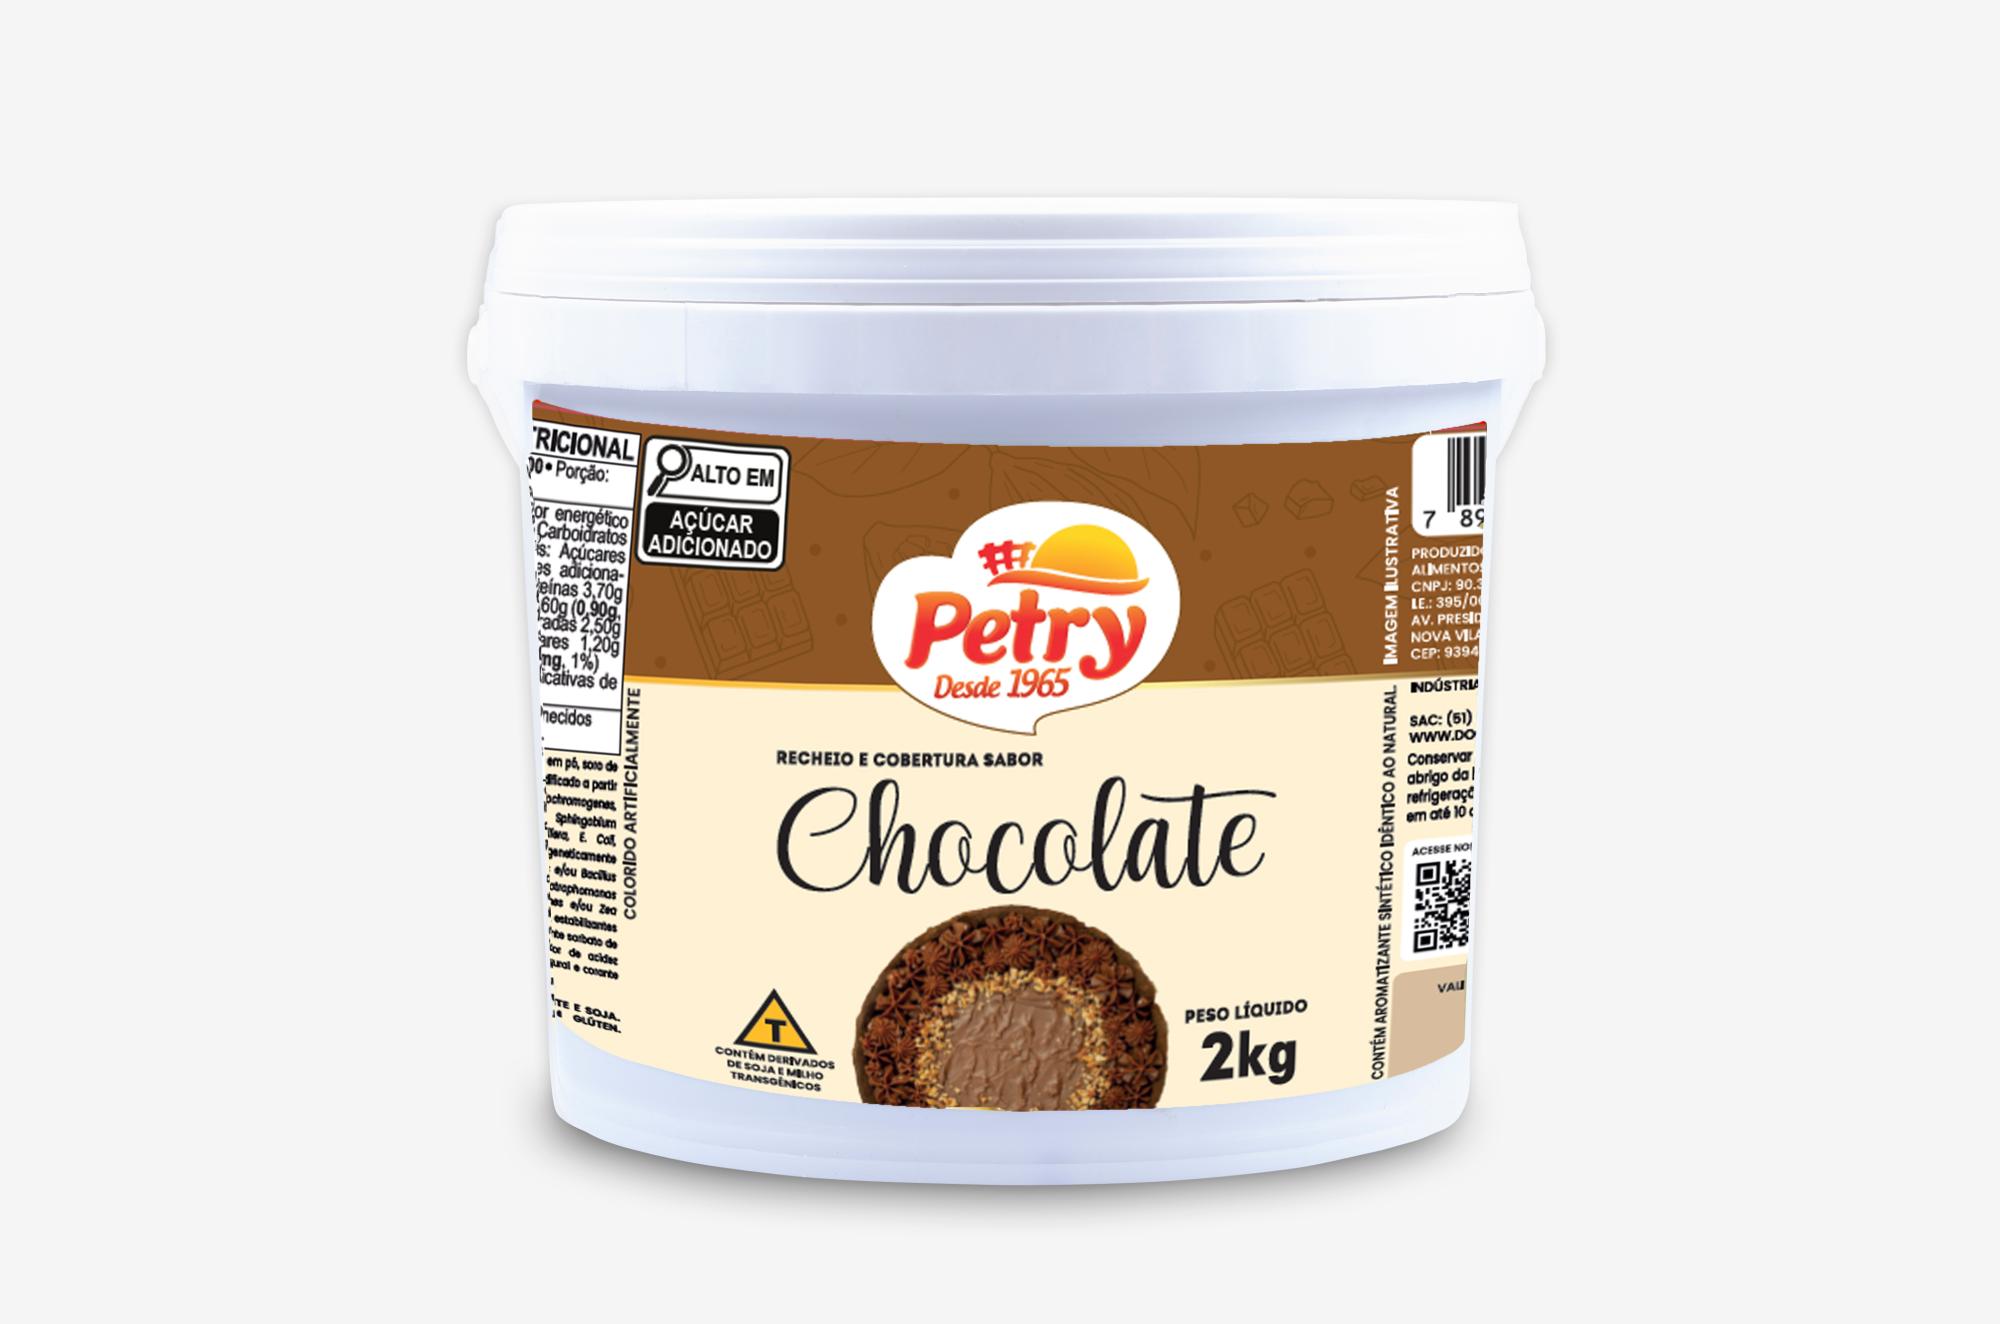 Recheio e cobertura sabor Chocolate Petry 2kg